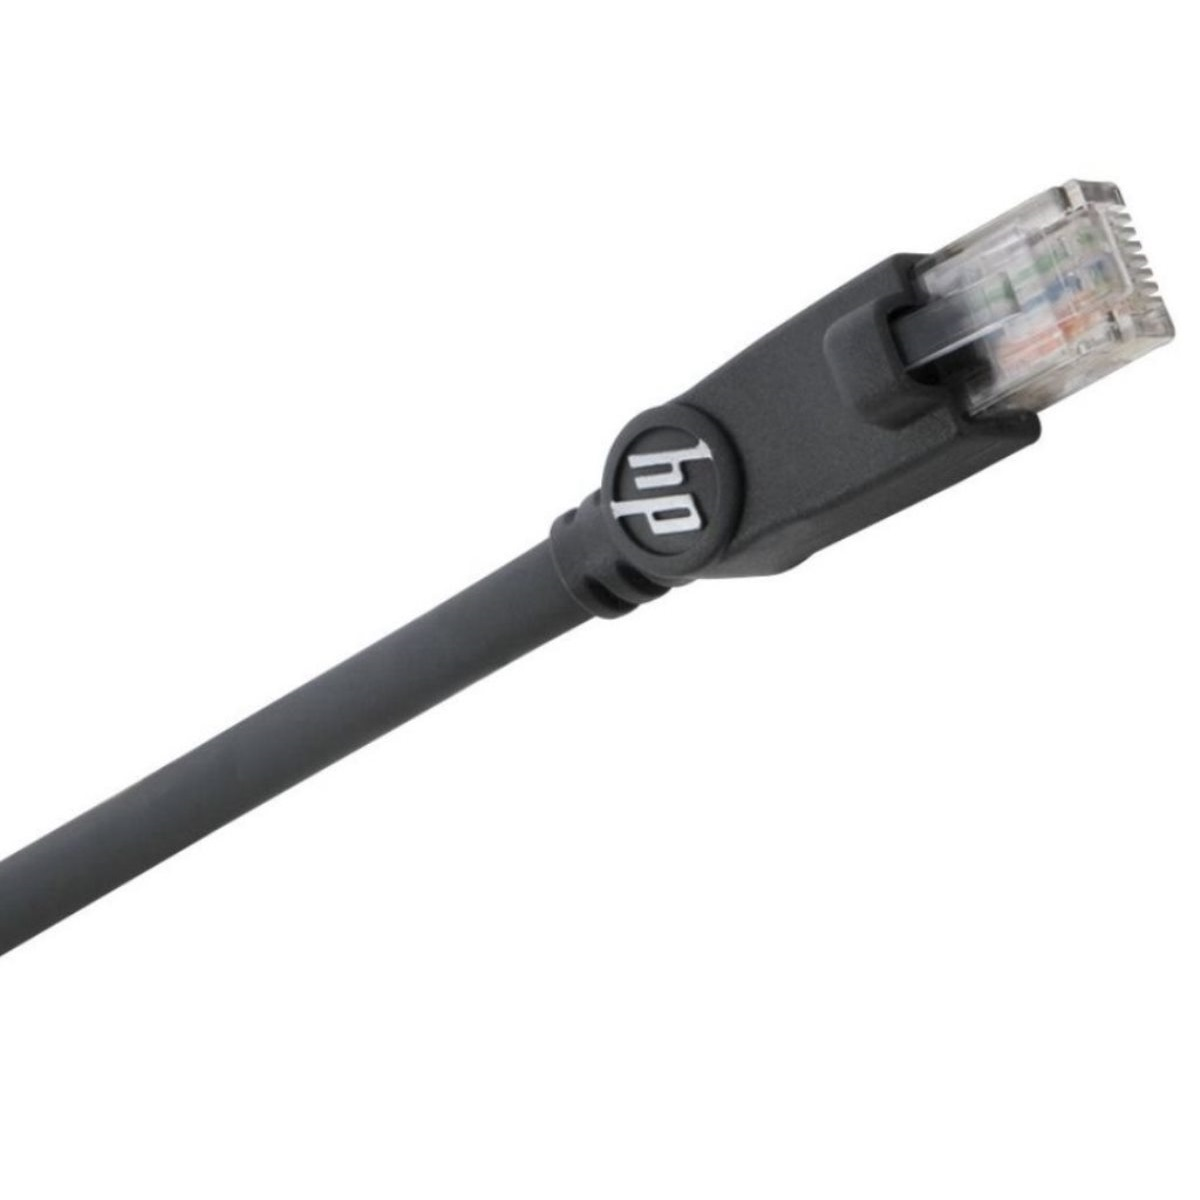 Cable Ethernet Kabel, CABLE HPM 700 MONSTER Internet Schwarz